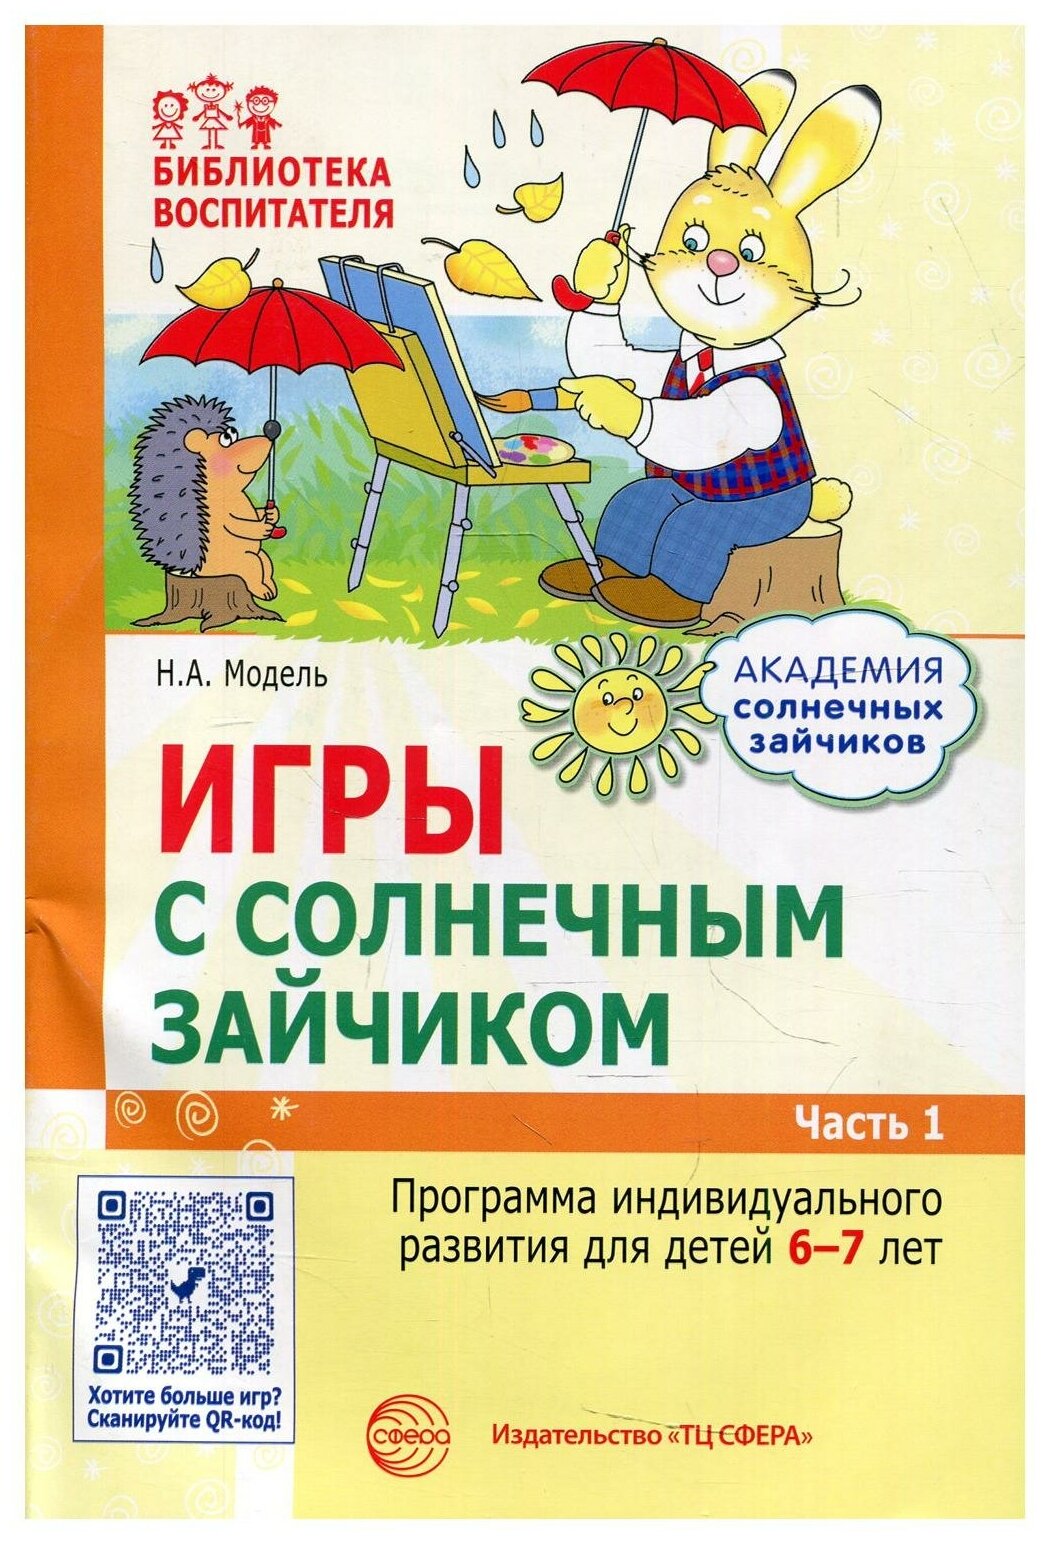 Игры с солнечным зайчиком. Программа индивидуального развития для детей 5—6 лет. Часть 1 - фото №1